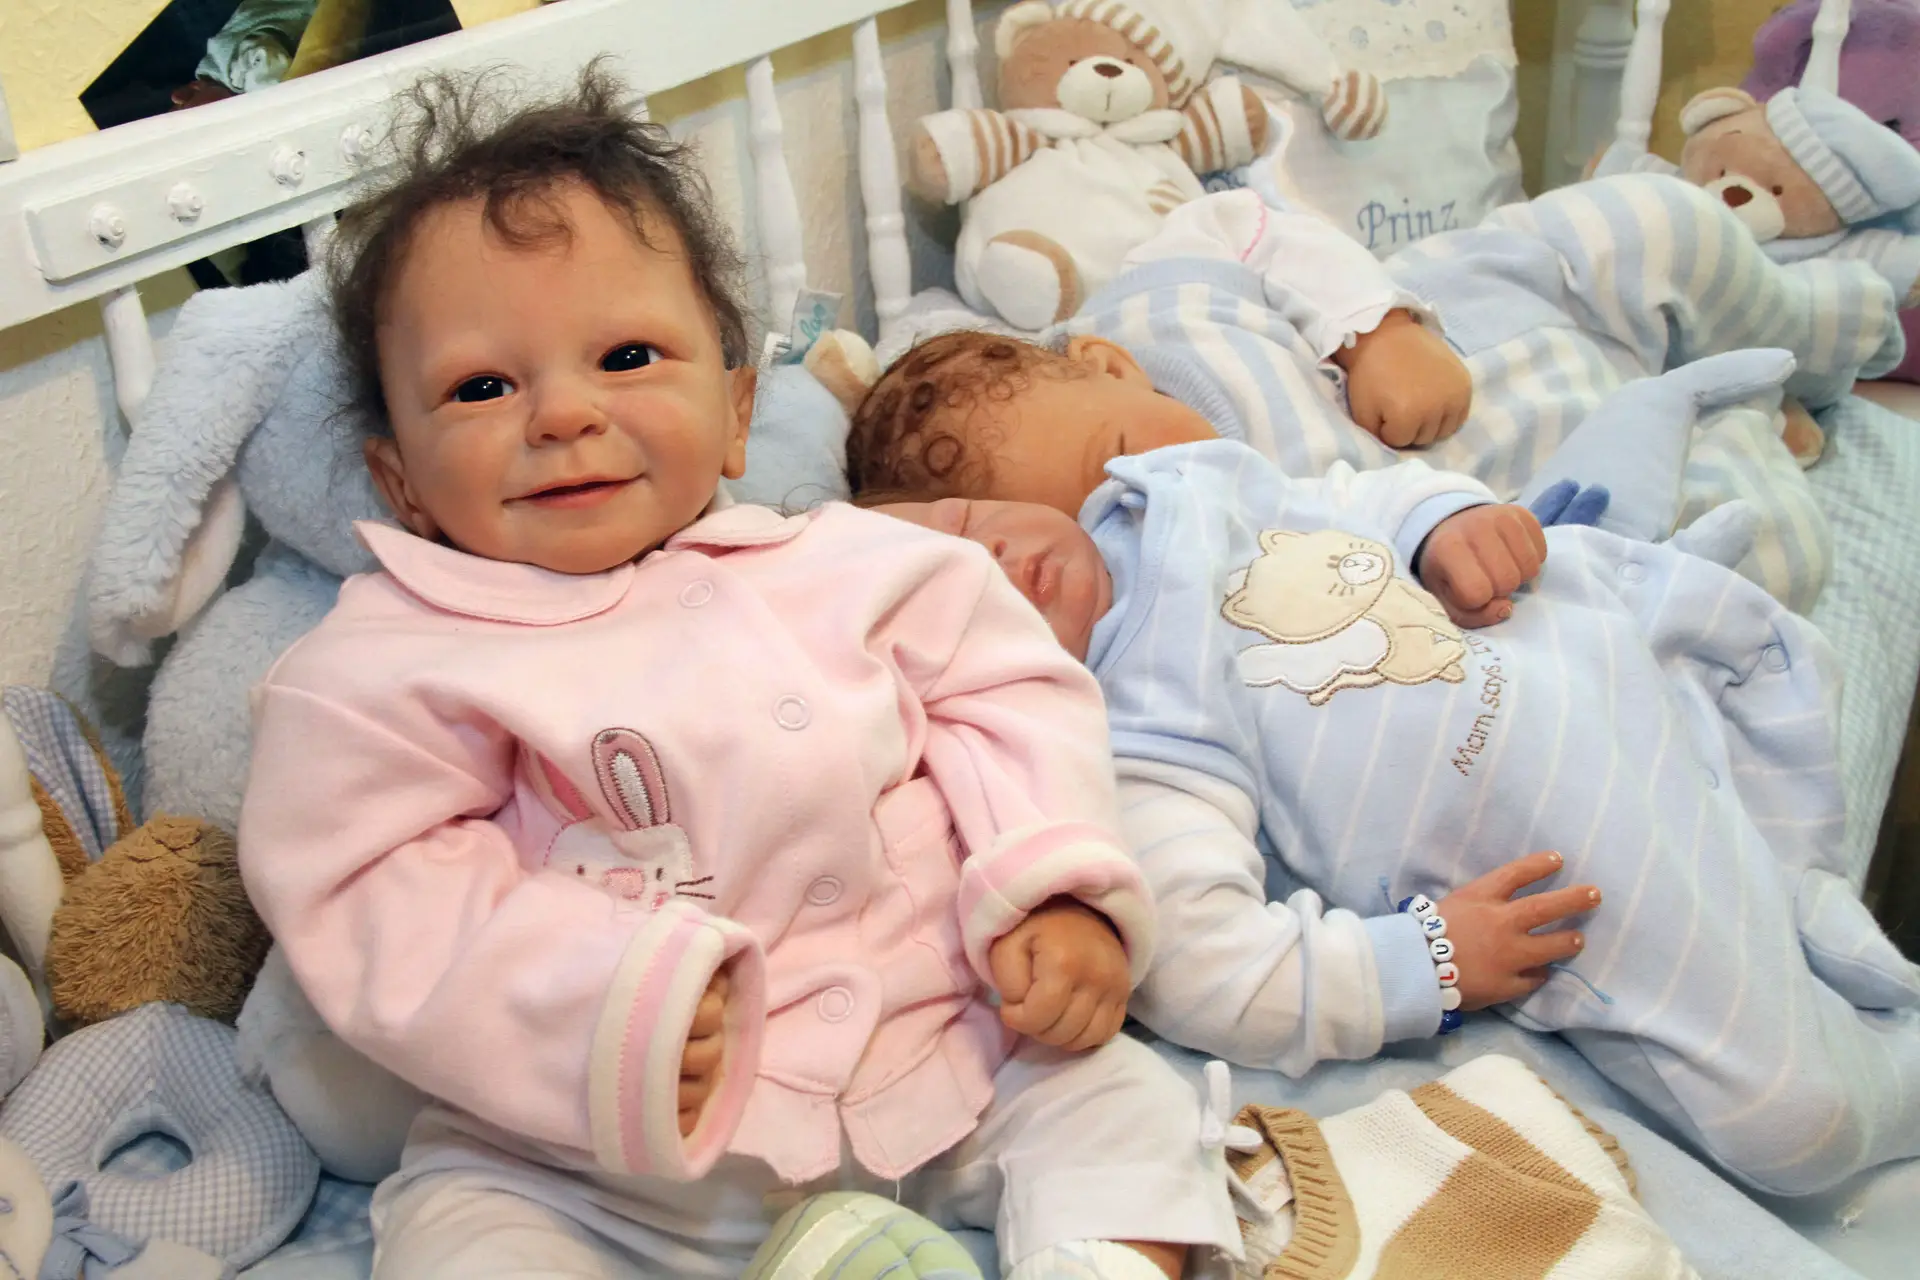 Jovem de 15 anos cria bonecas que parecem bebês reais 